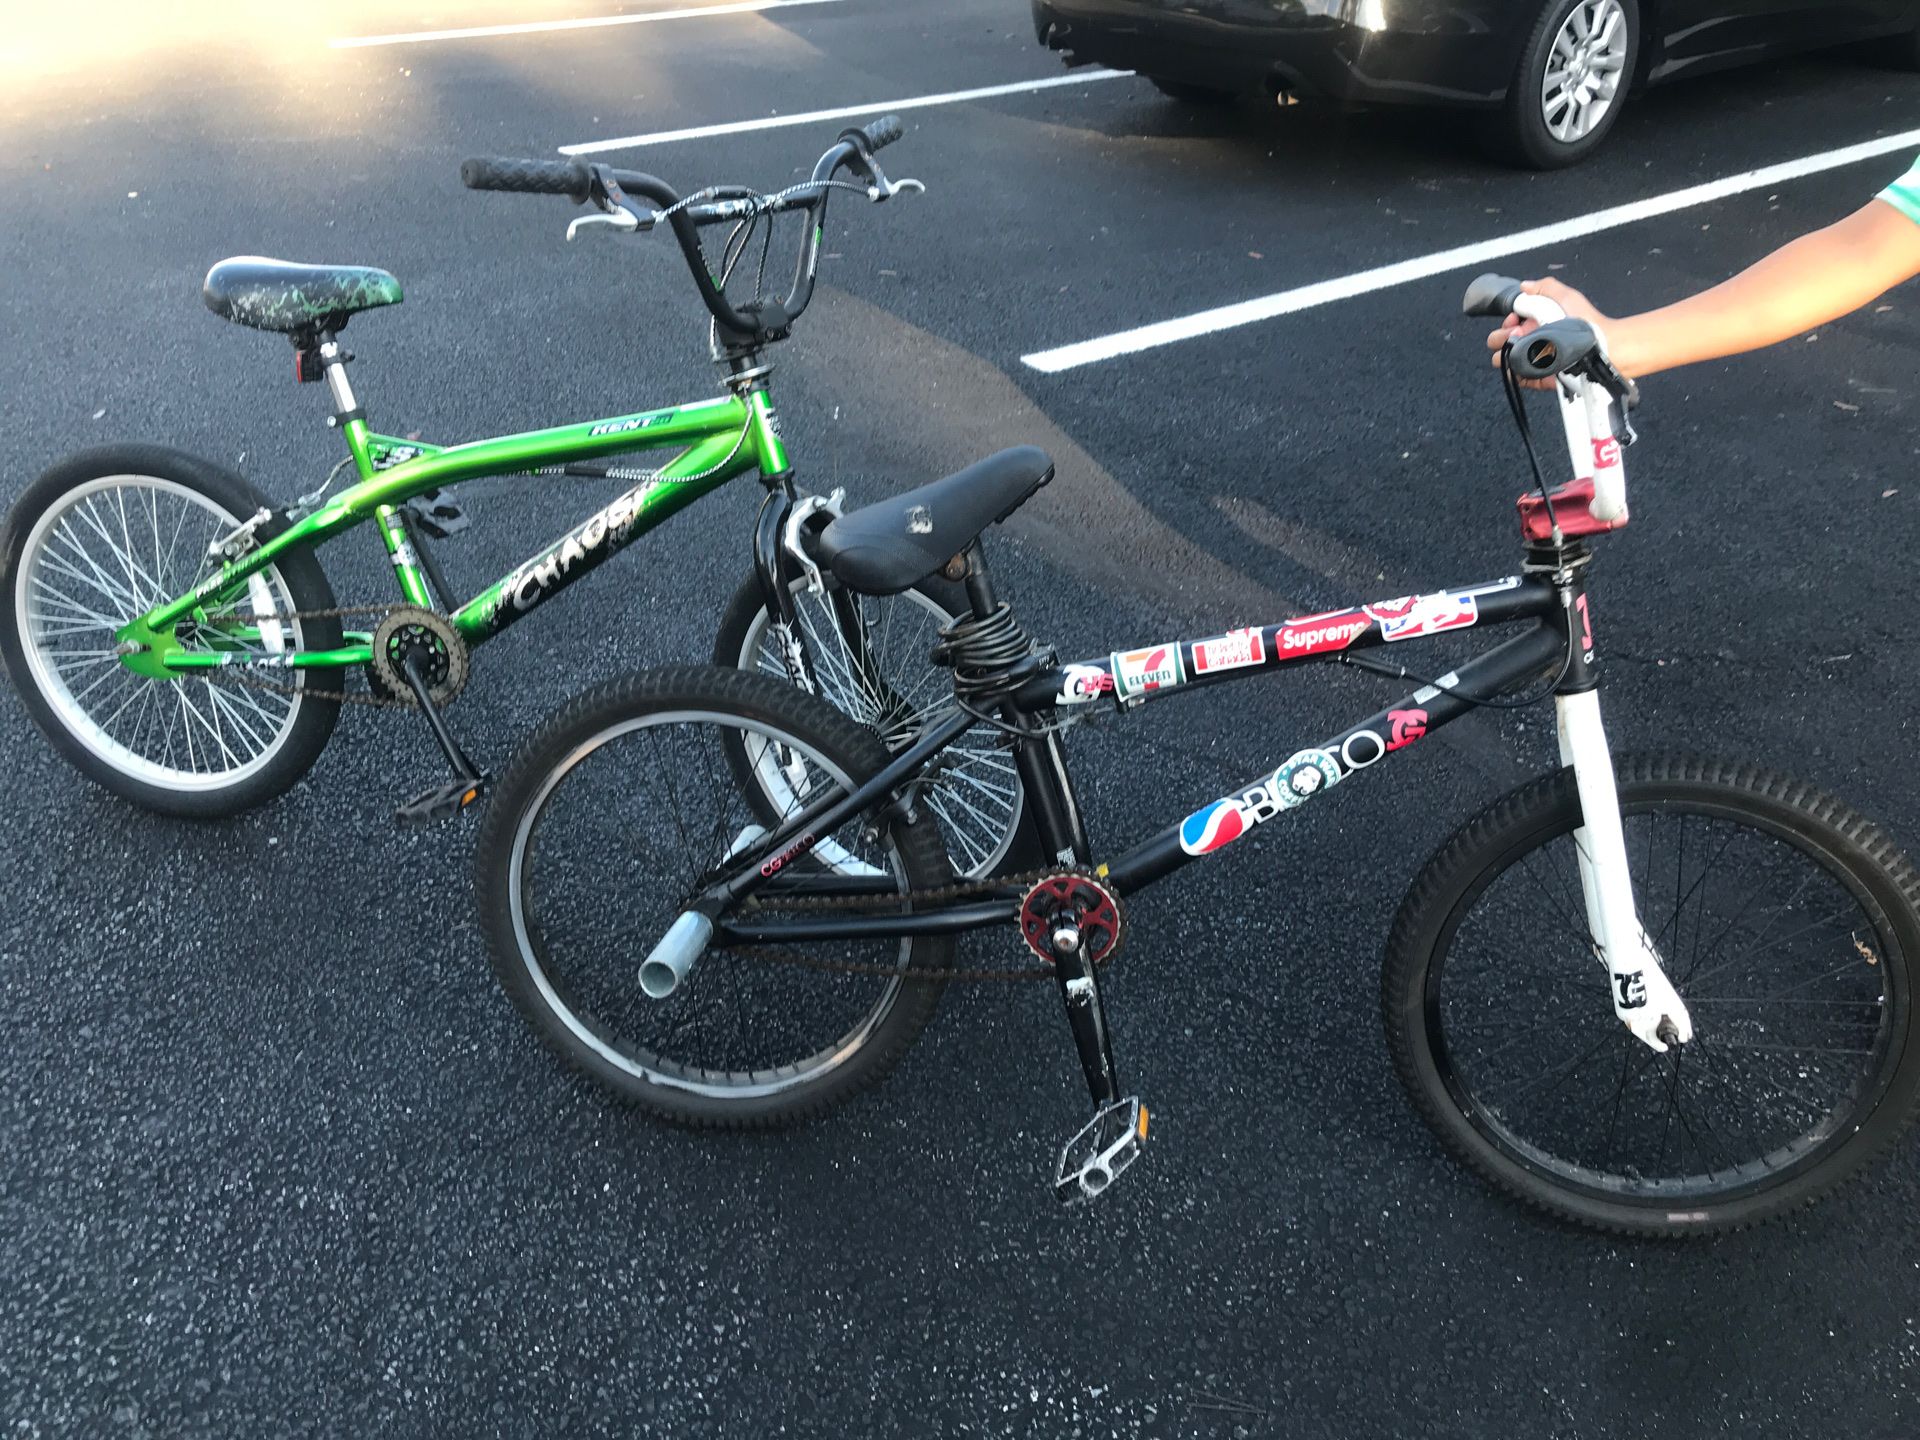 2 BMX Bikes|$30.00 each|